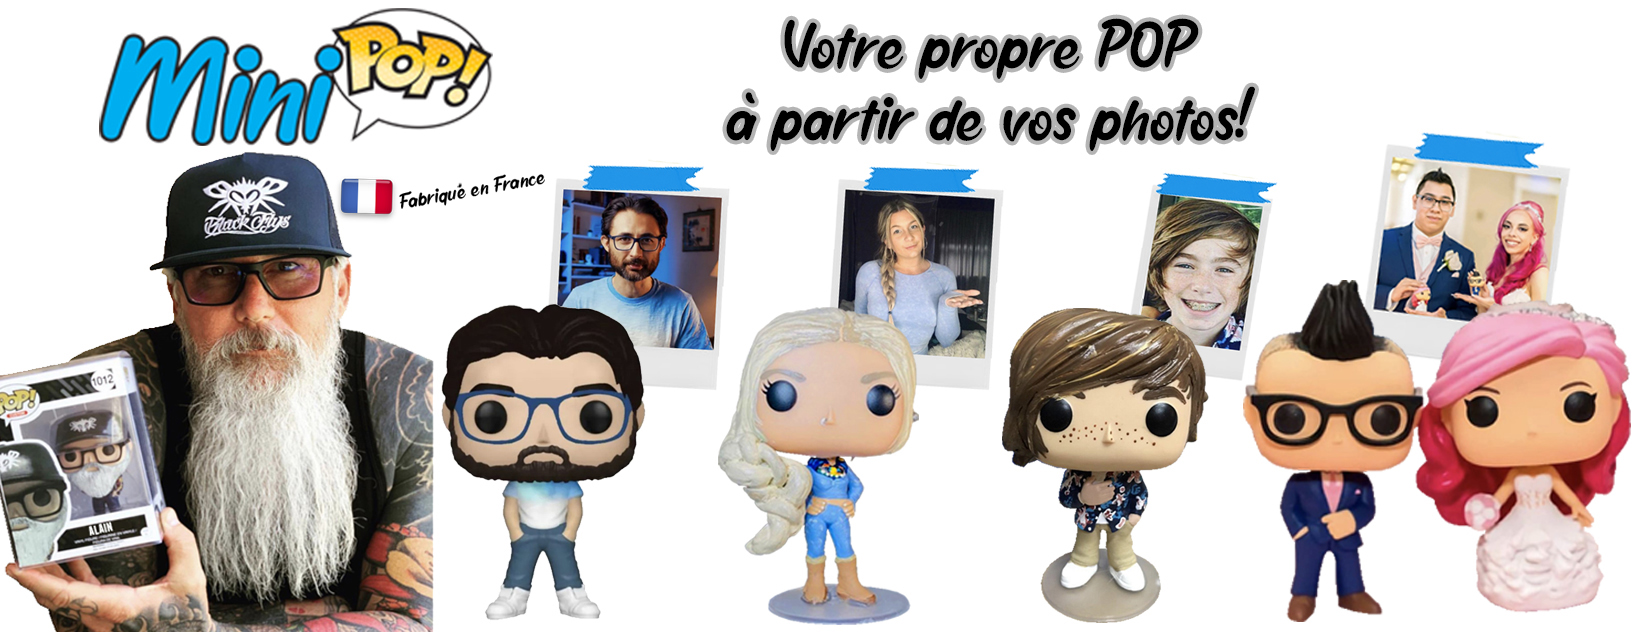 Ce site français veut se débarrasser de ses figurines POP : pour 1